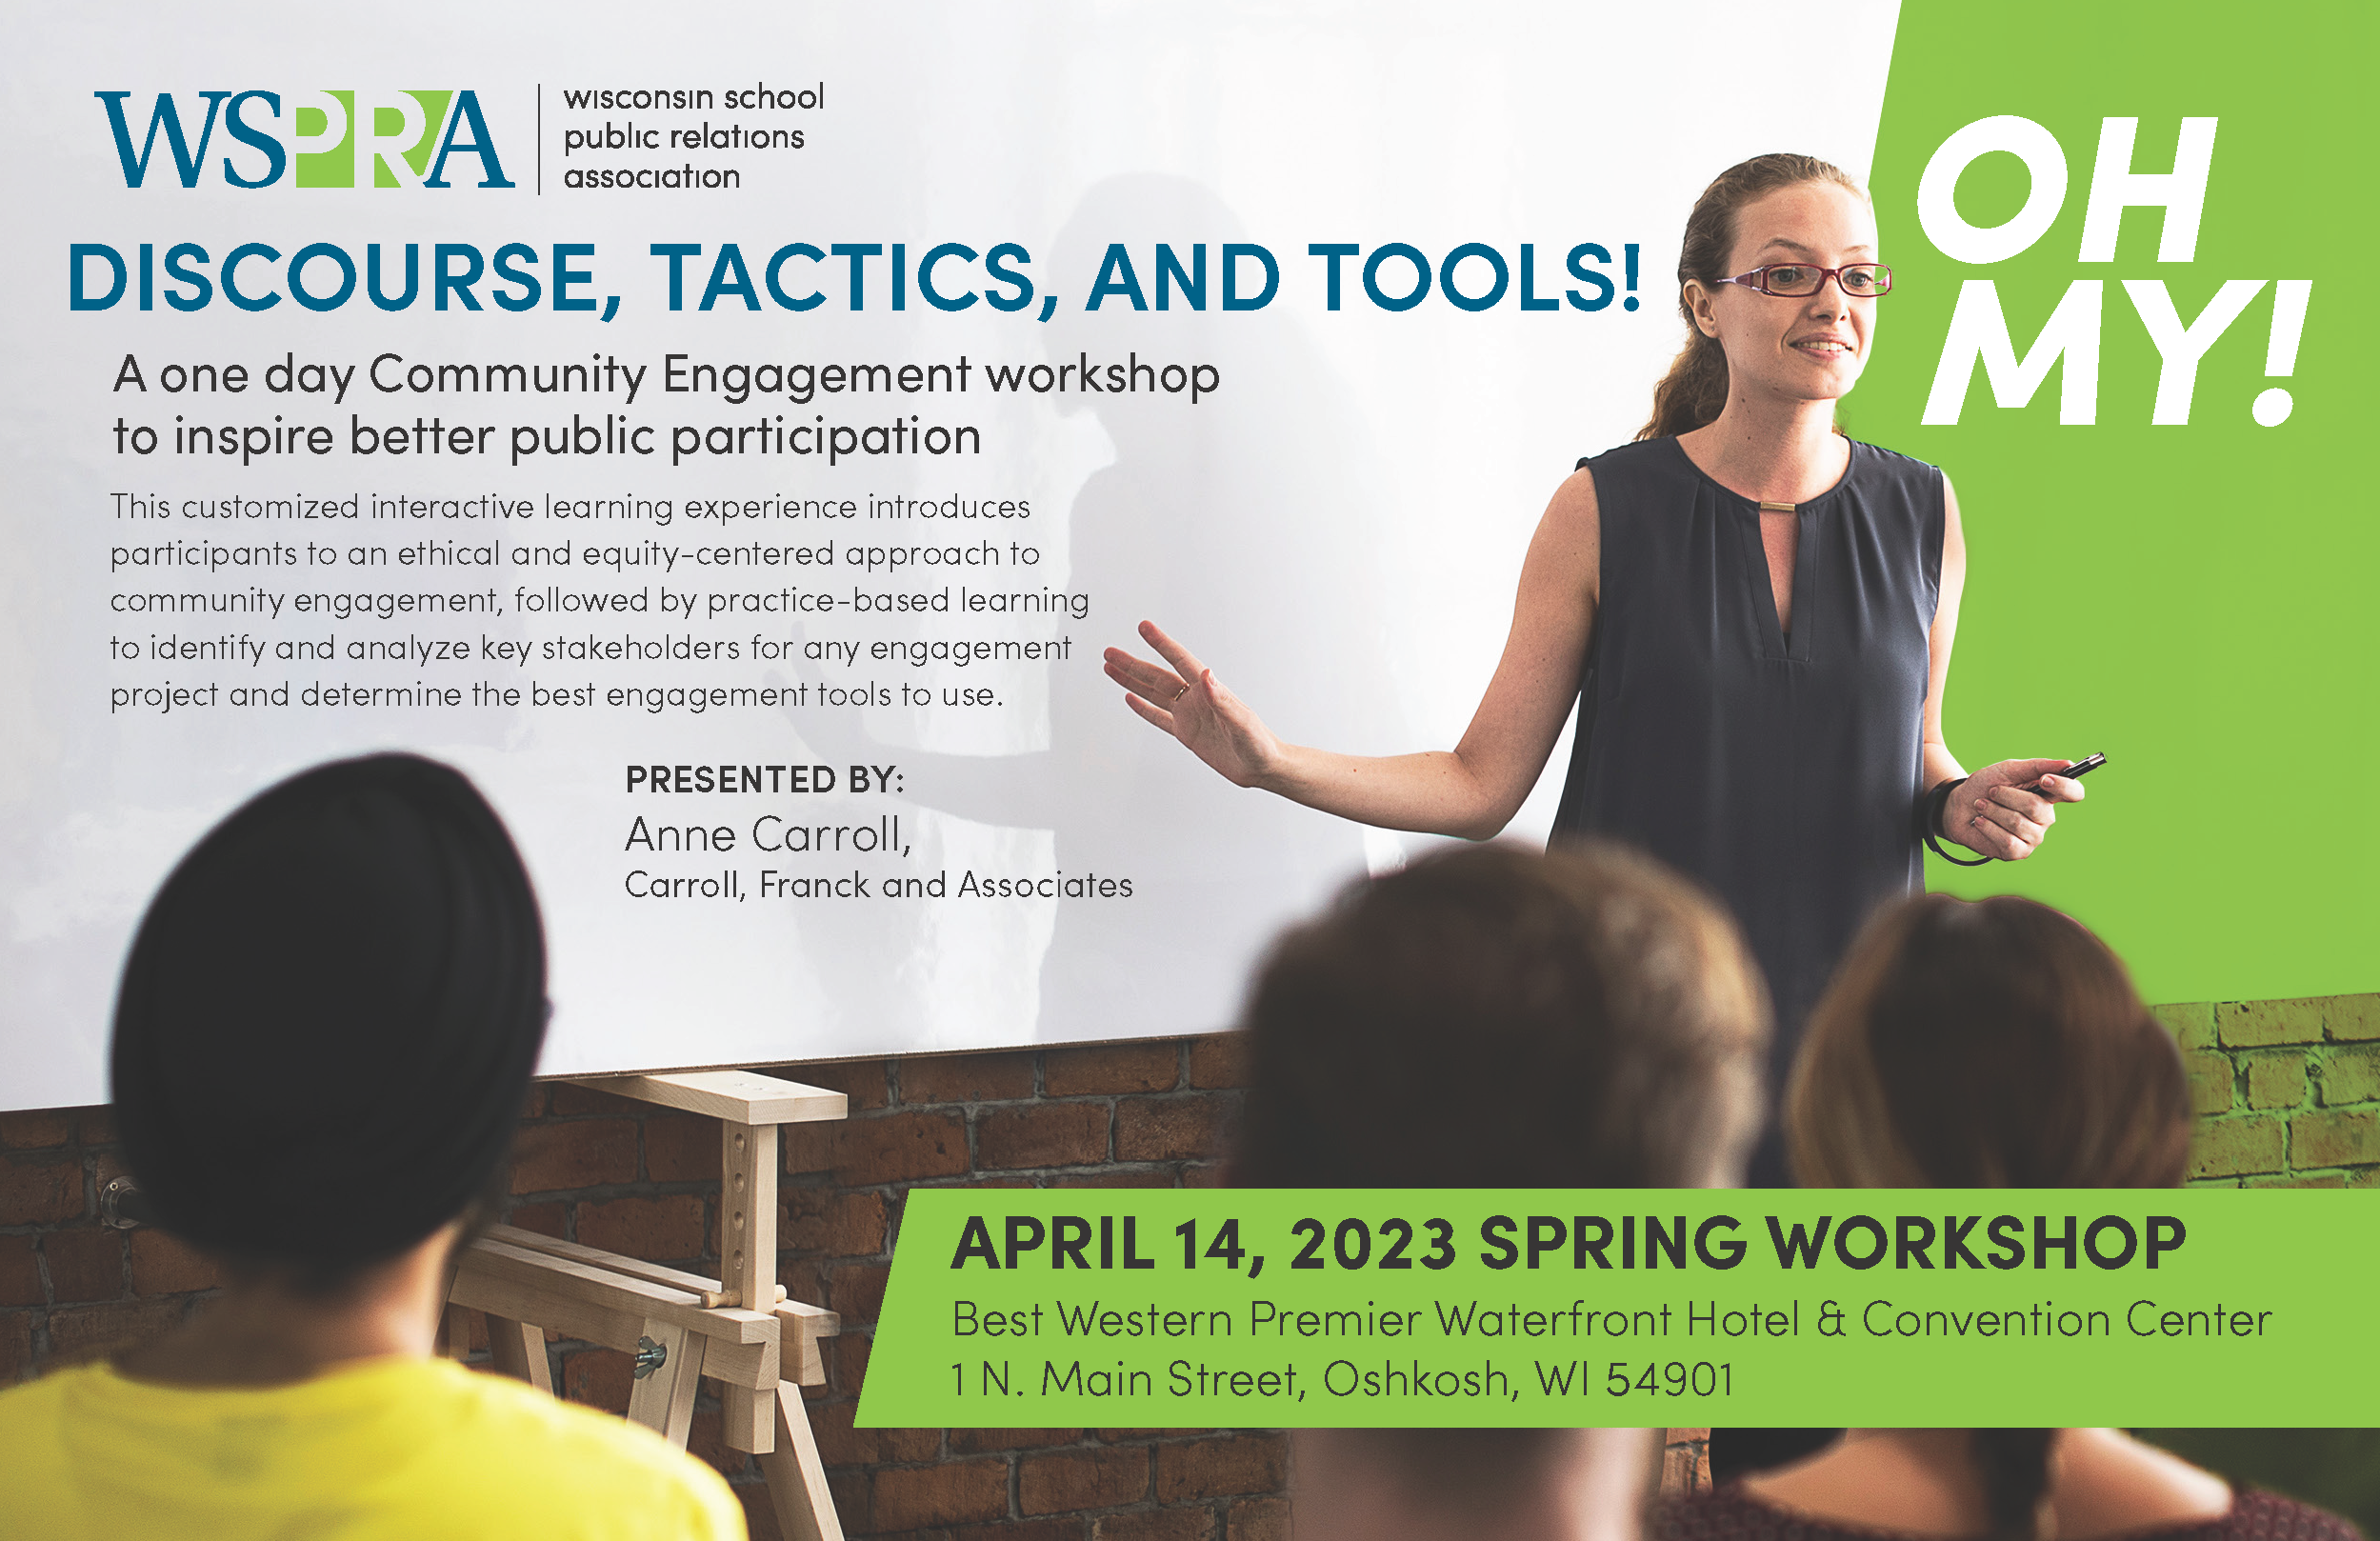 spring workshop information